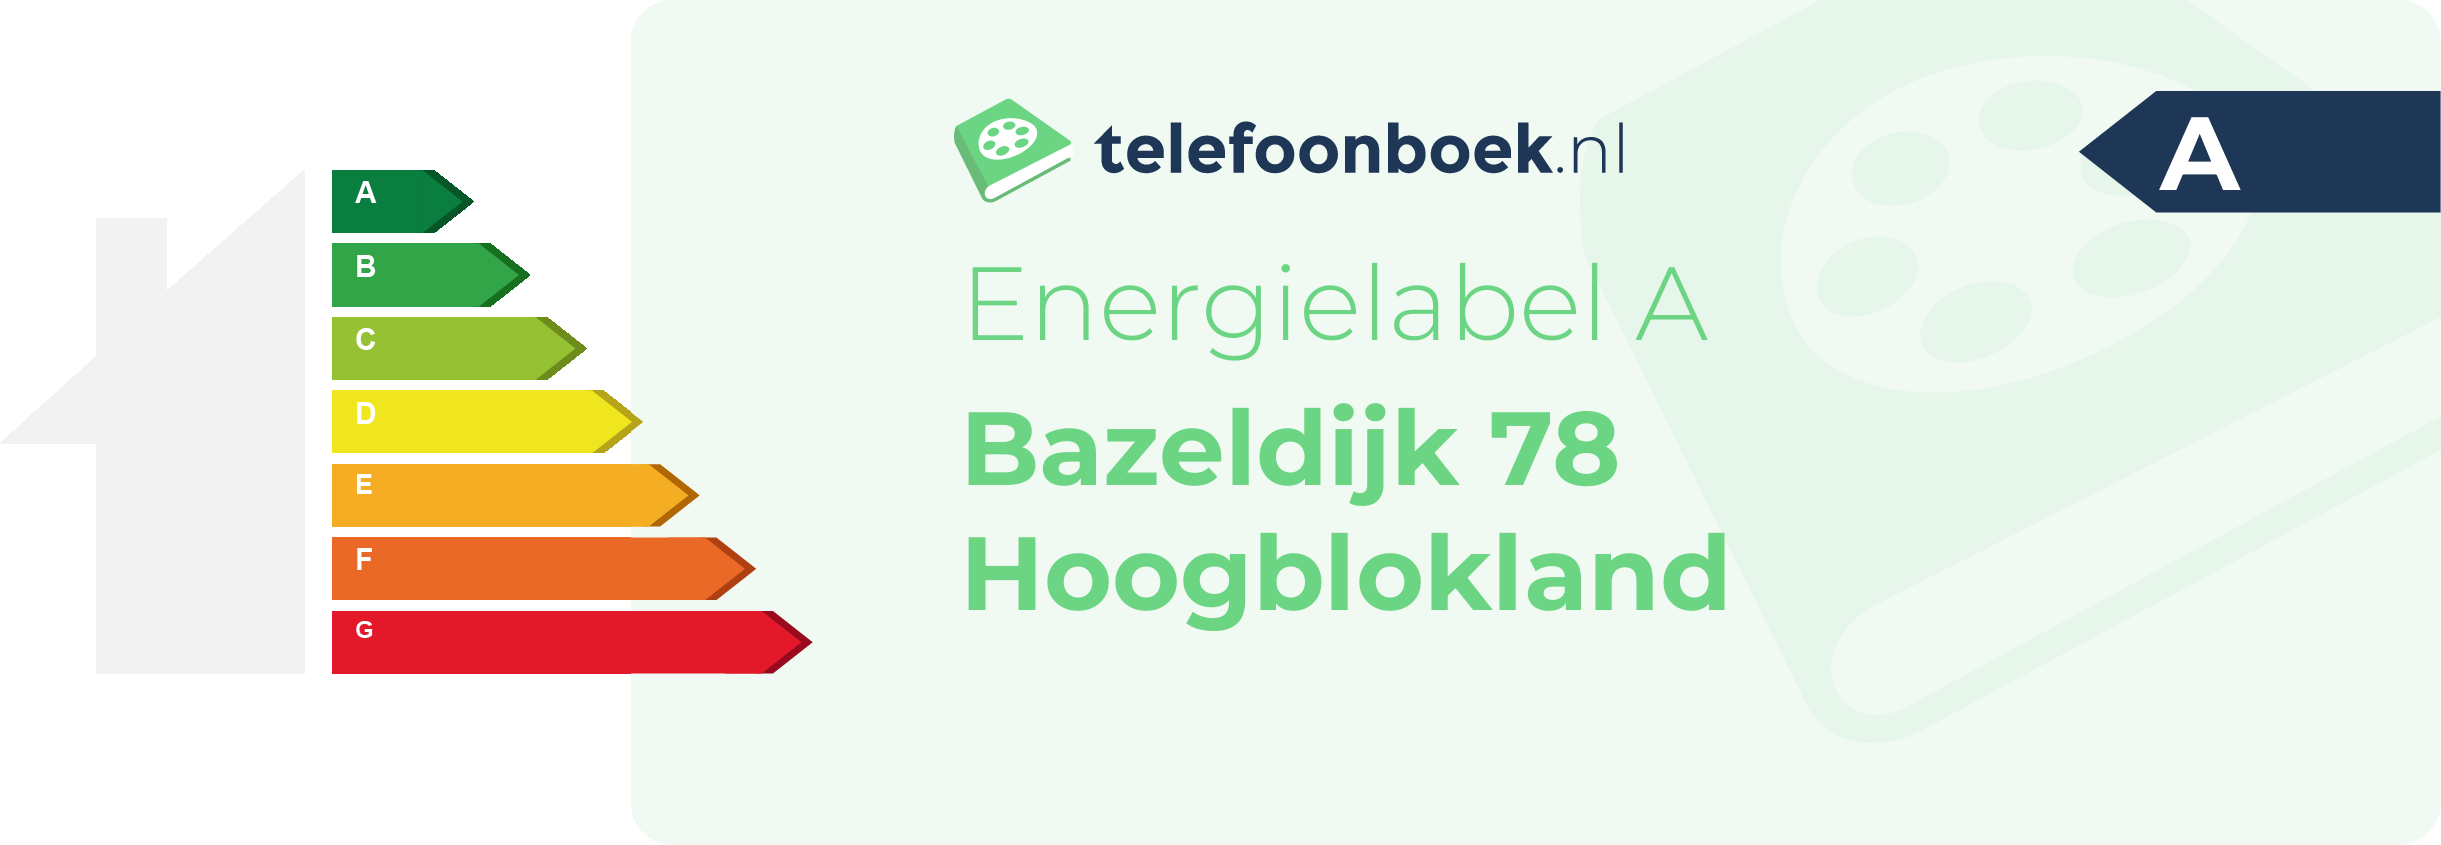 Energielabel Bazeldijk 78 Hoogblokland